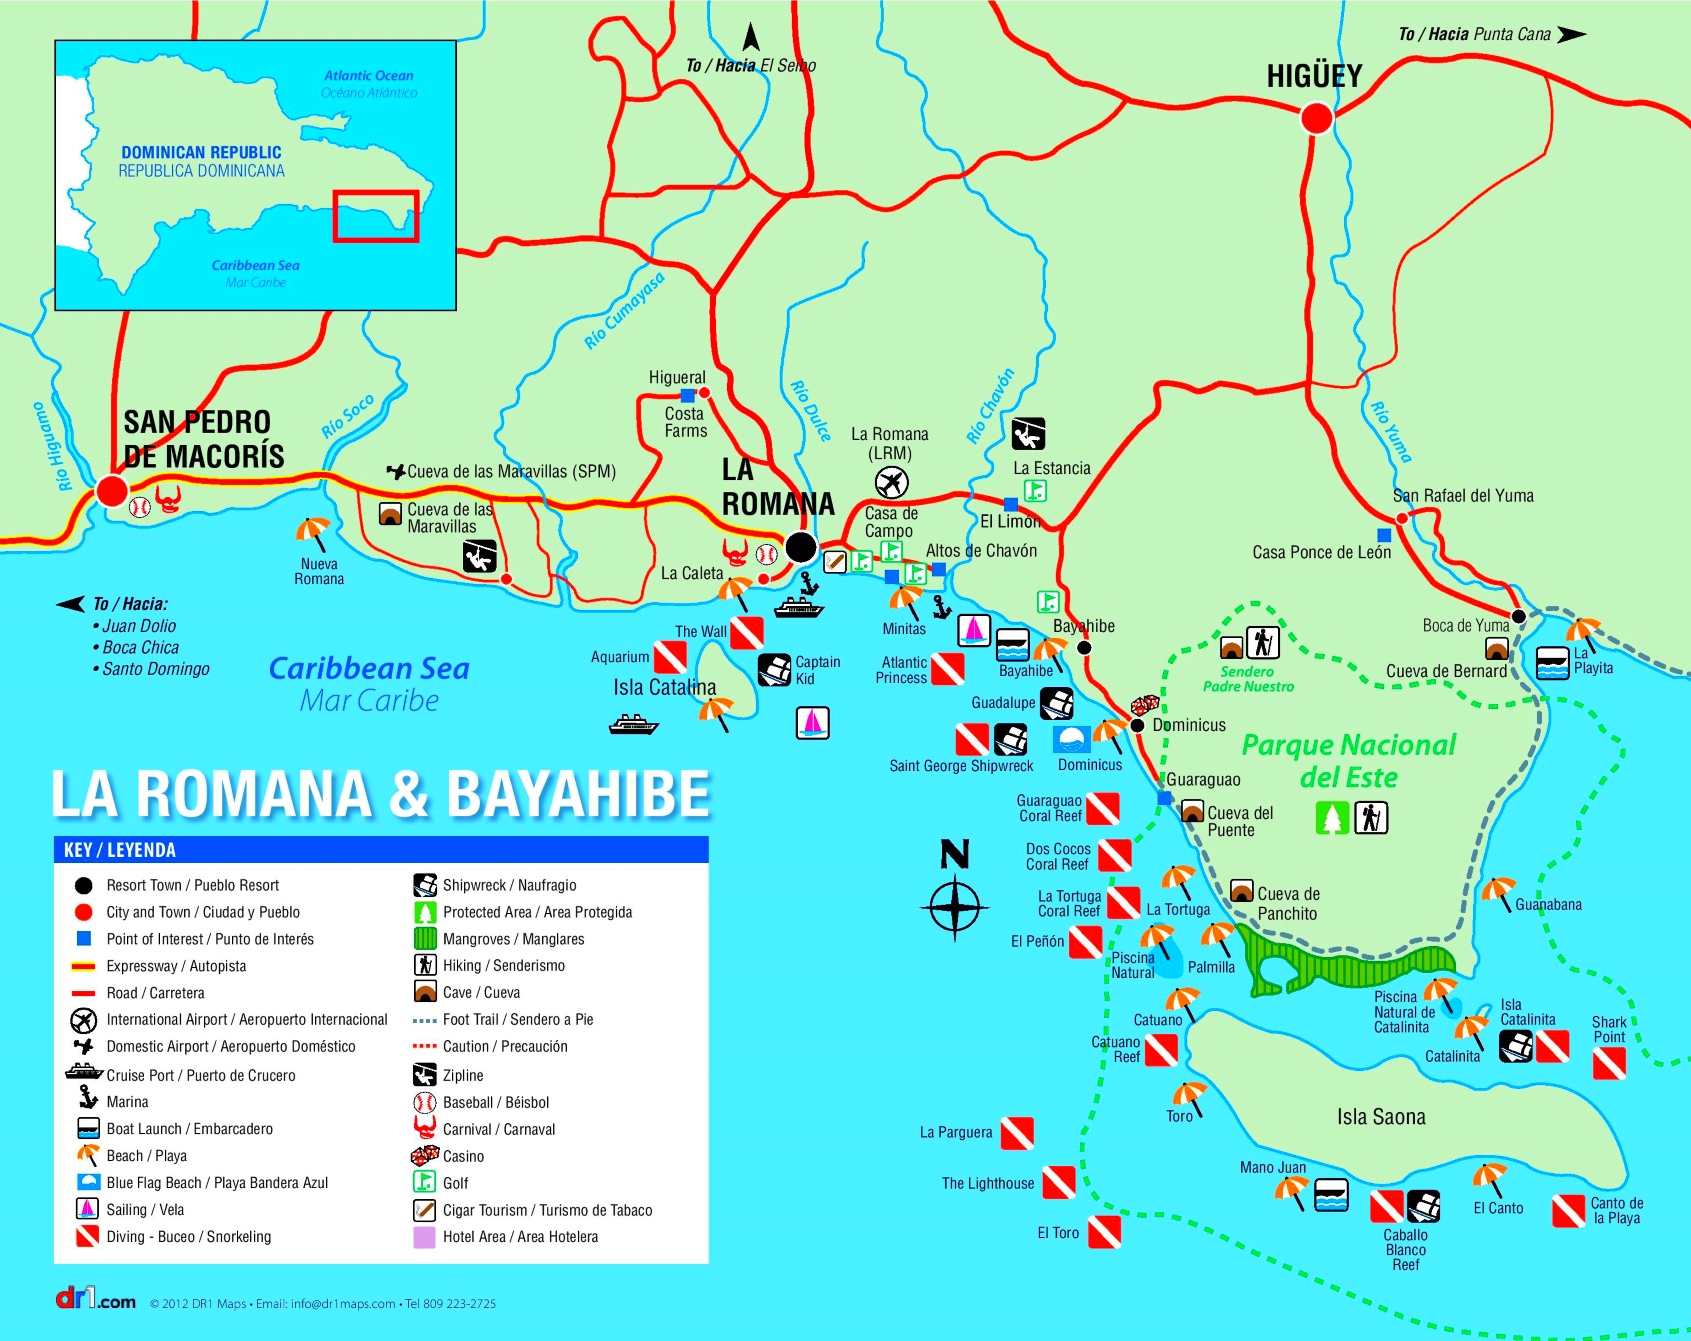 La romana cruise port map - fruitlopers